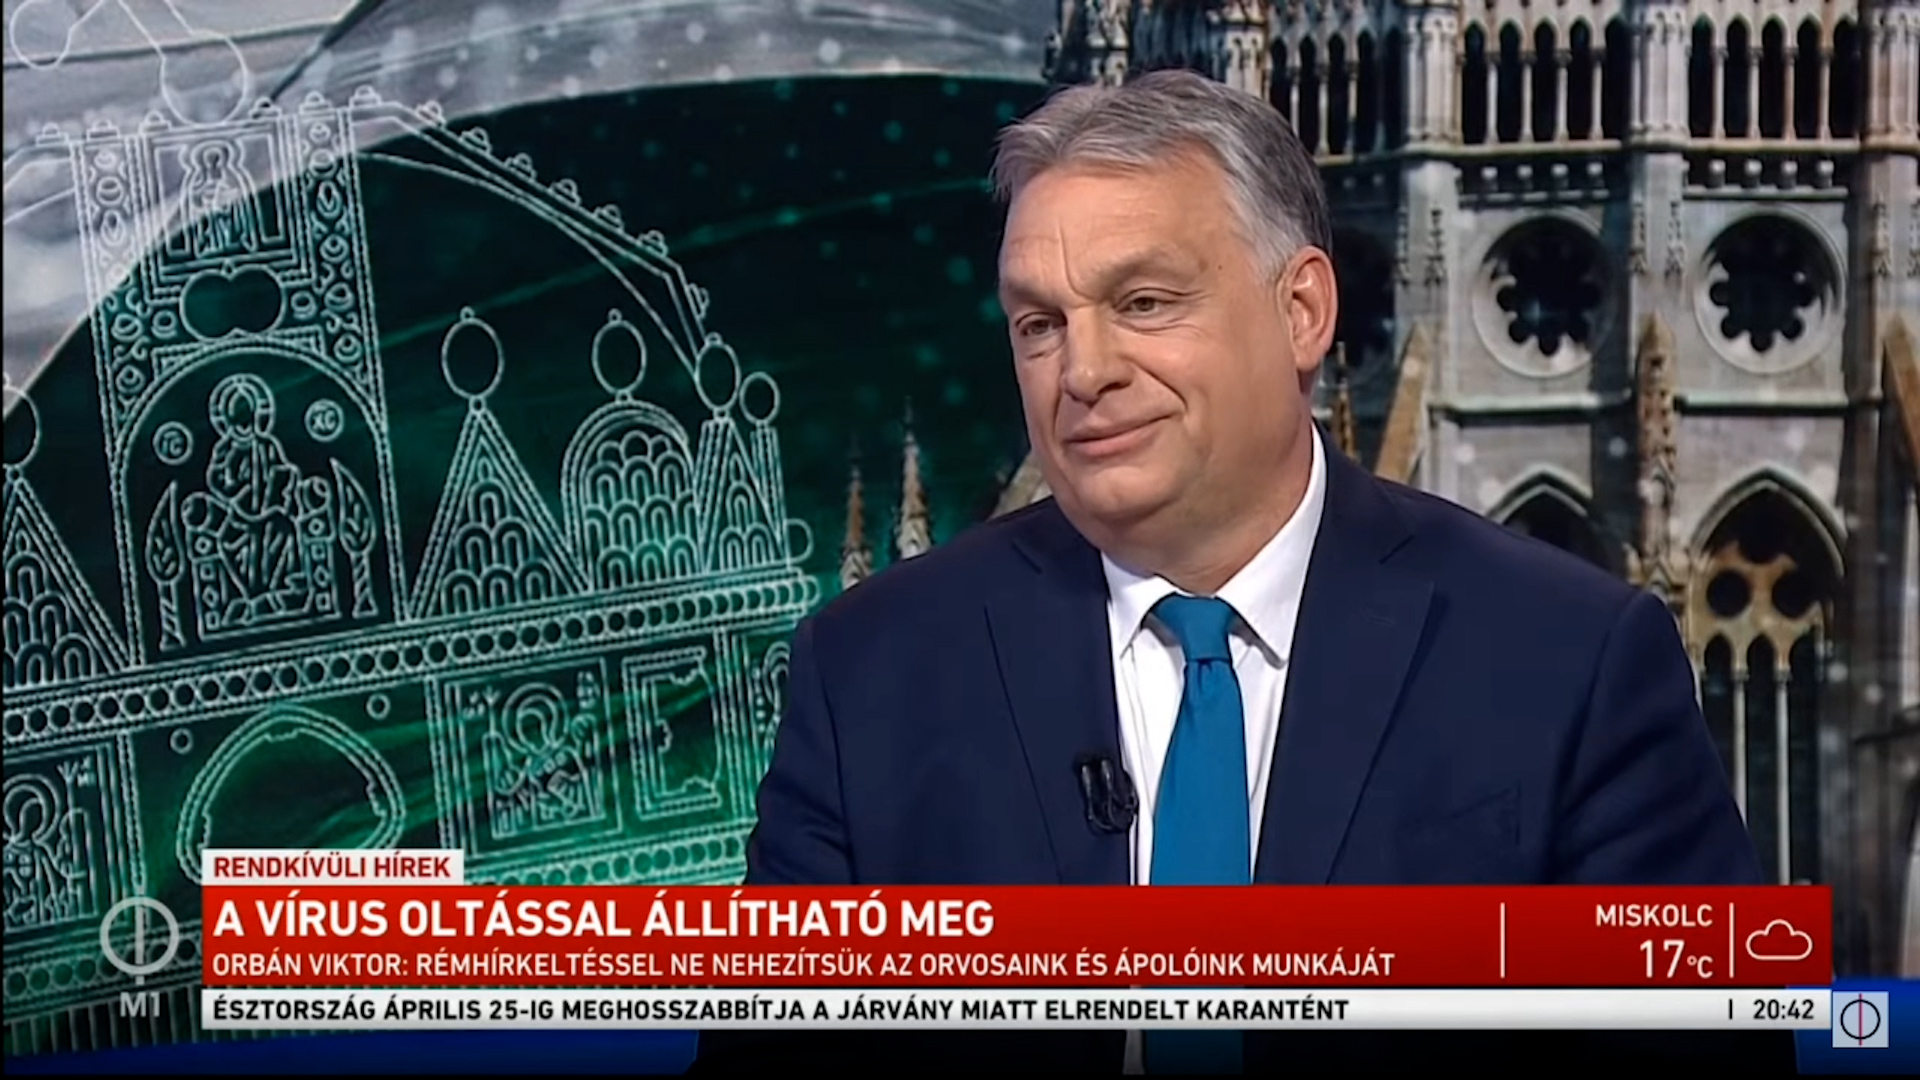 Orbán Viktor azt üzente az egészségügyben dolgozóknak, hogy ő is négy órákat alszik, mégsincs híján a romantikának